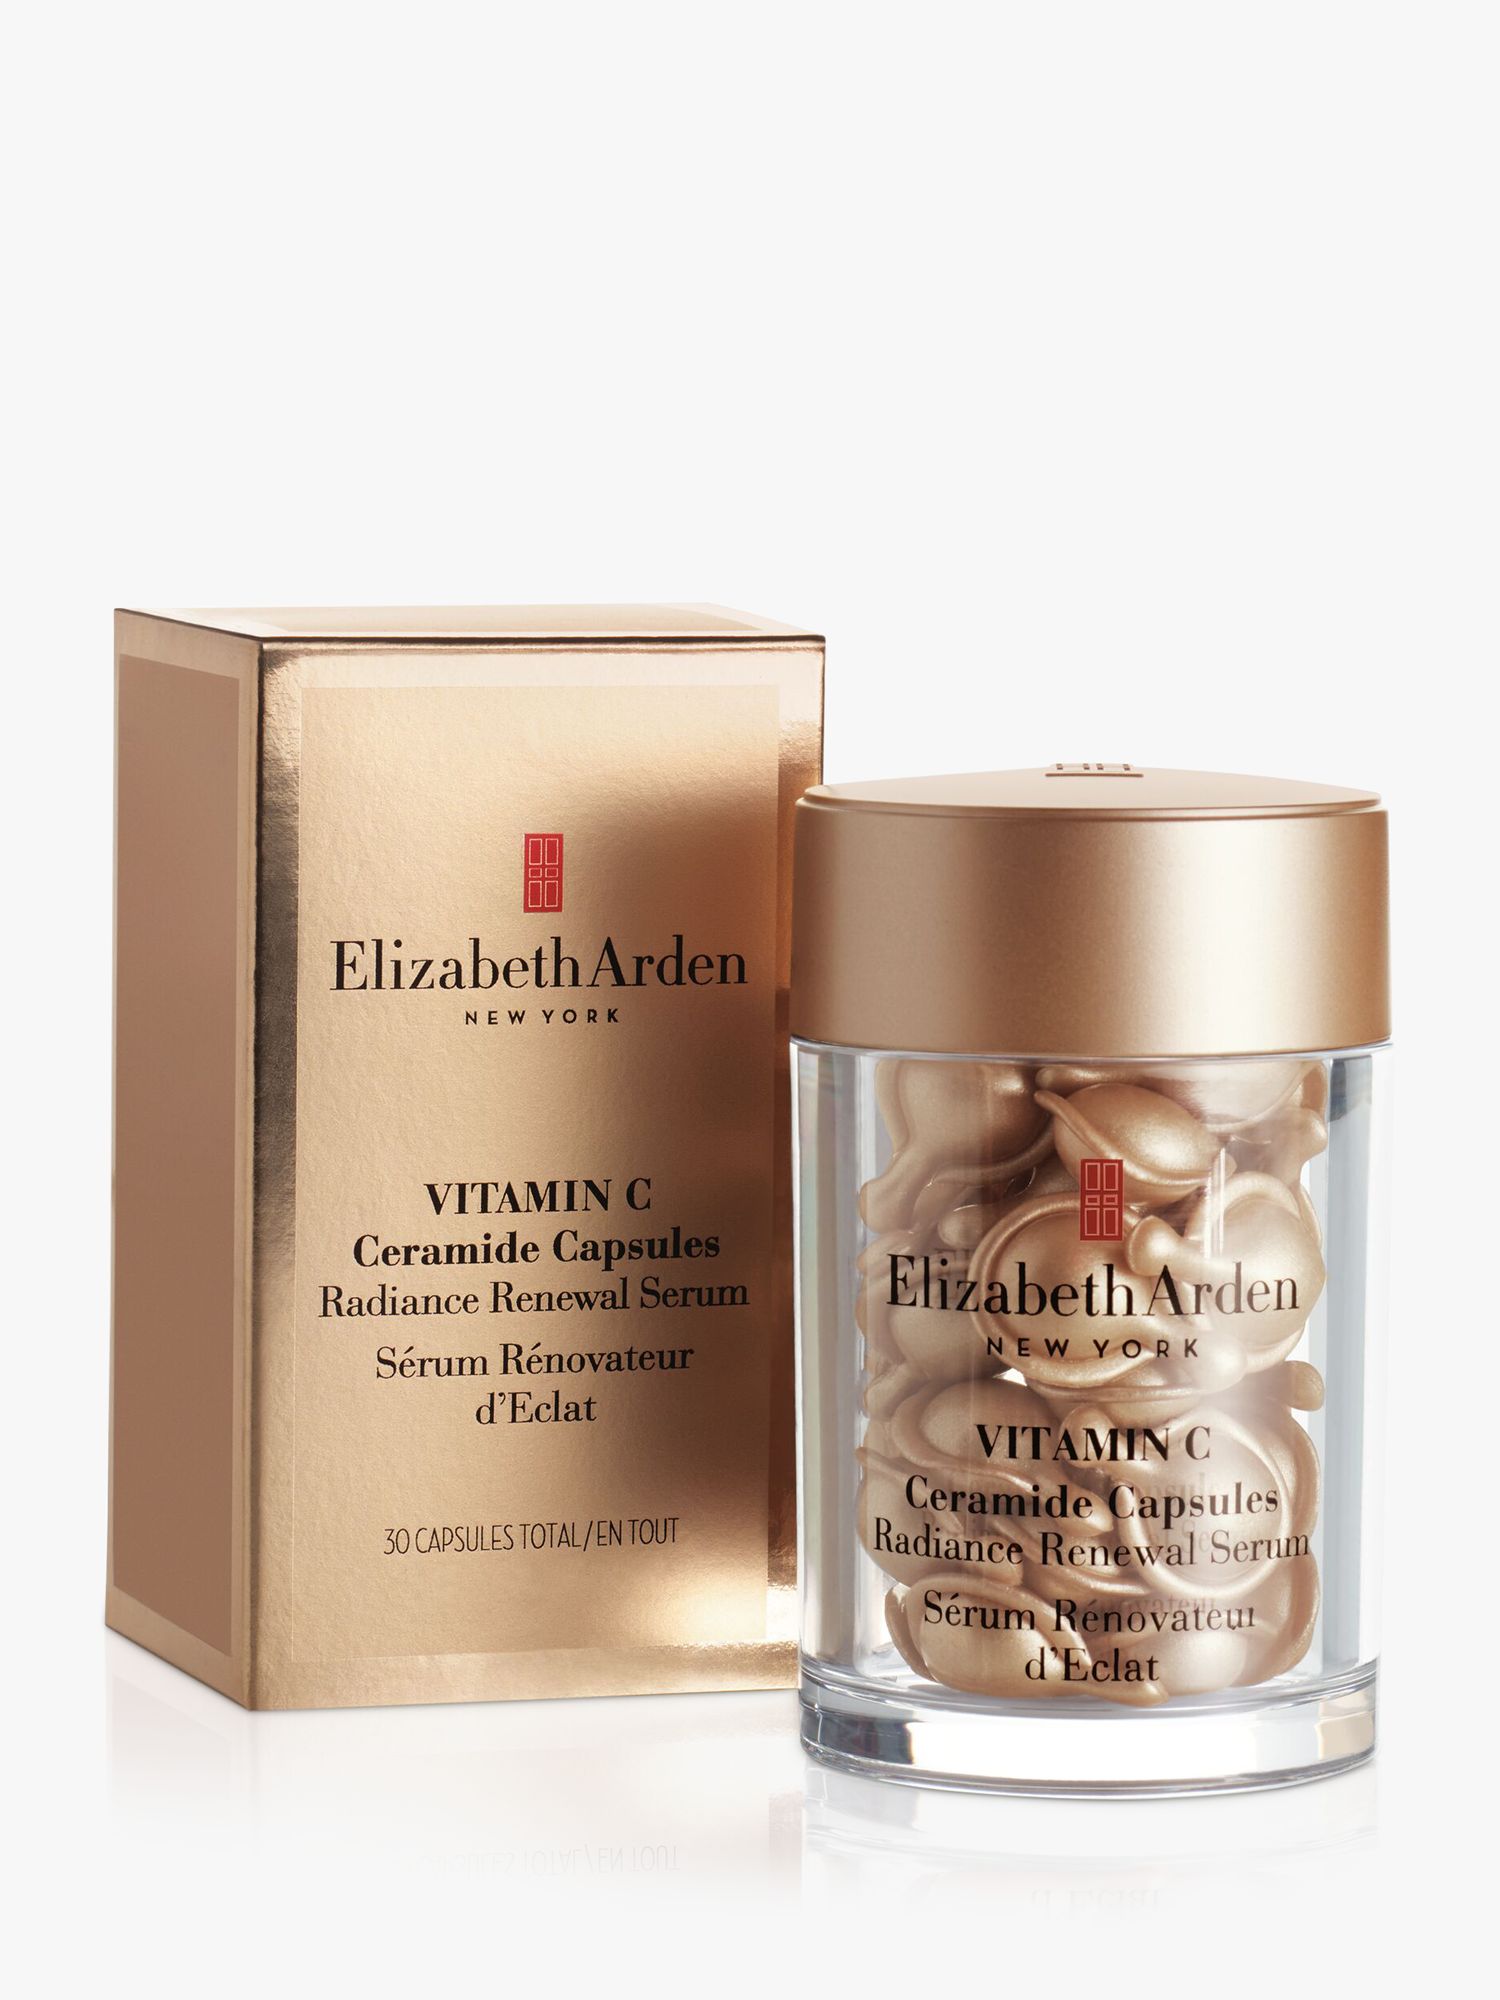 Elizabeth Arden Vitamin C Ceramide Capsules Radiance Renewal Serum, x 30 2